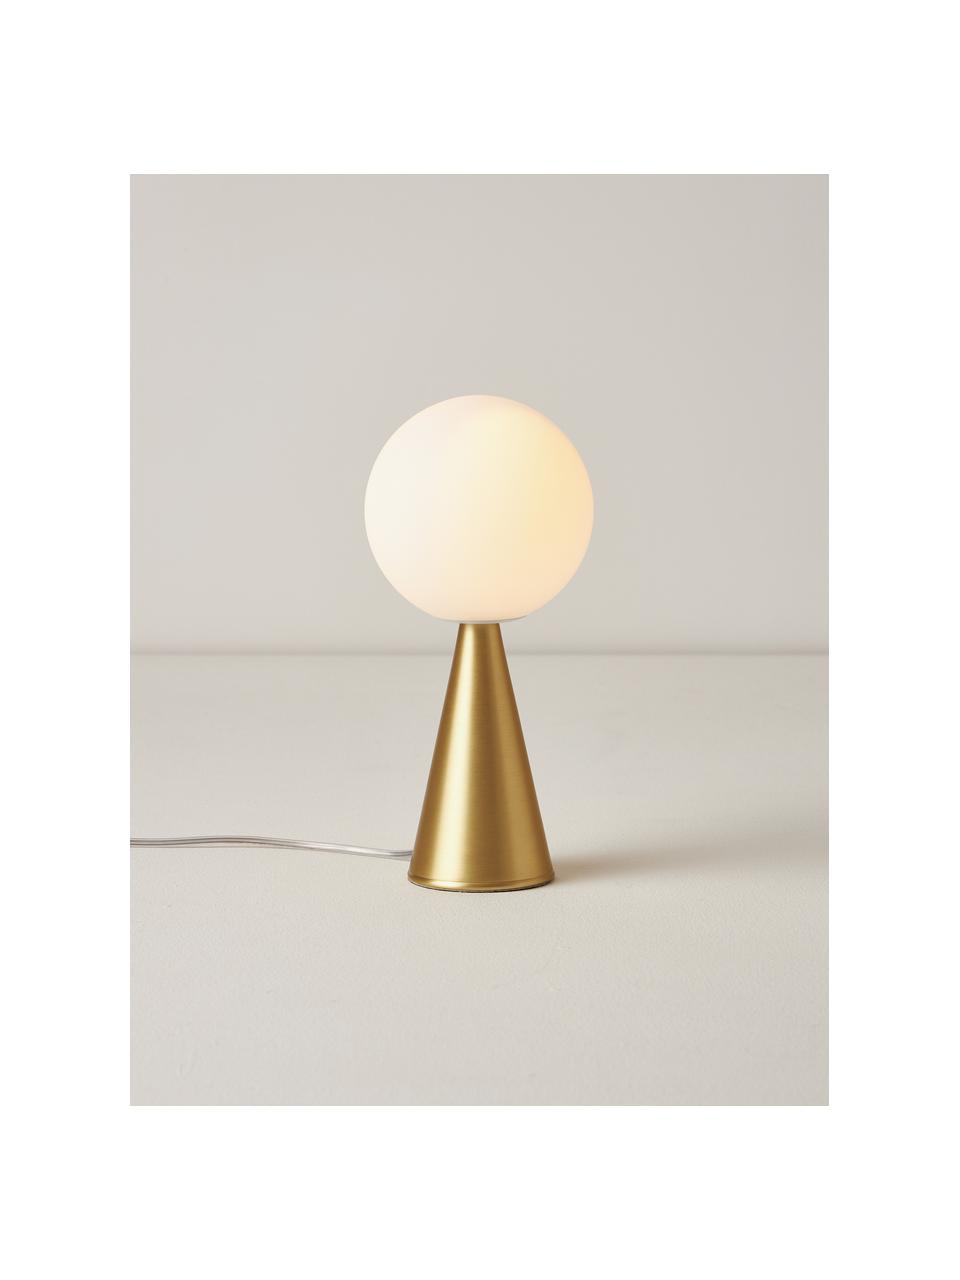 Ręcznie wykonana lampa stołowa Bilia, Stelaż: mosiądz szczotkowany, Biały, mosiądz, Ø 12 x 26 cm